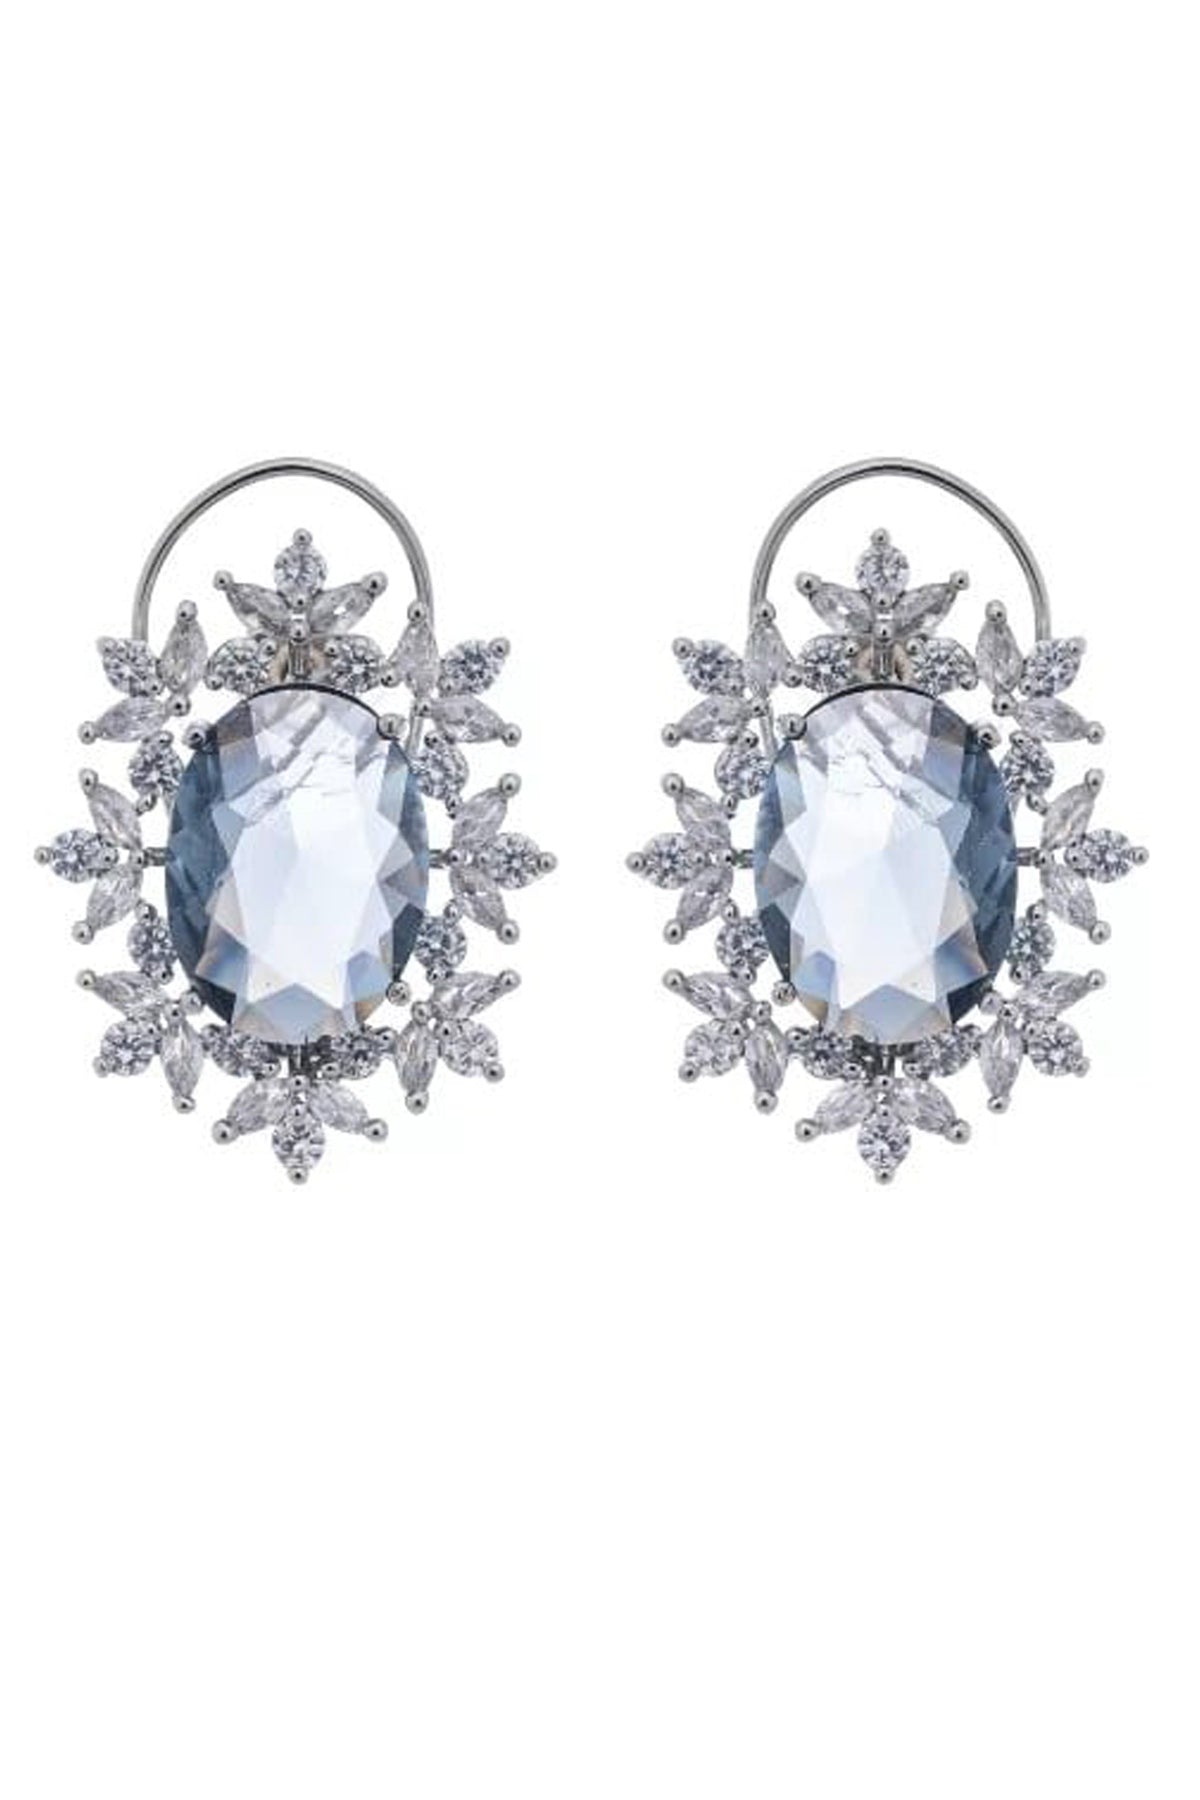 Black Oval Diamond Earrings